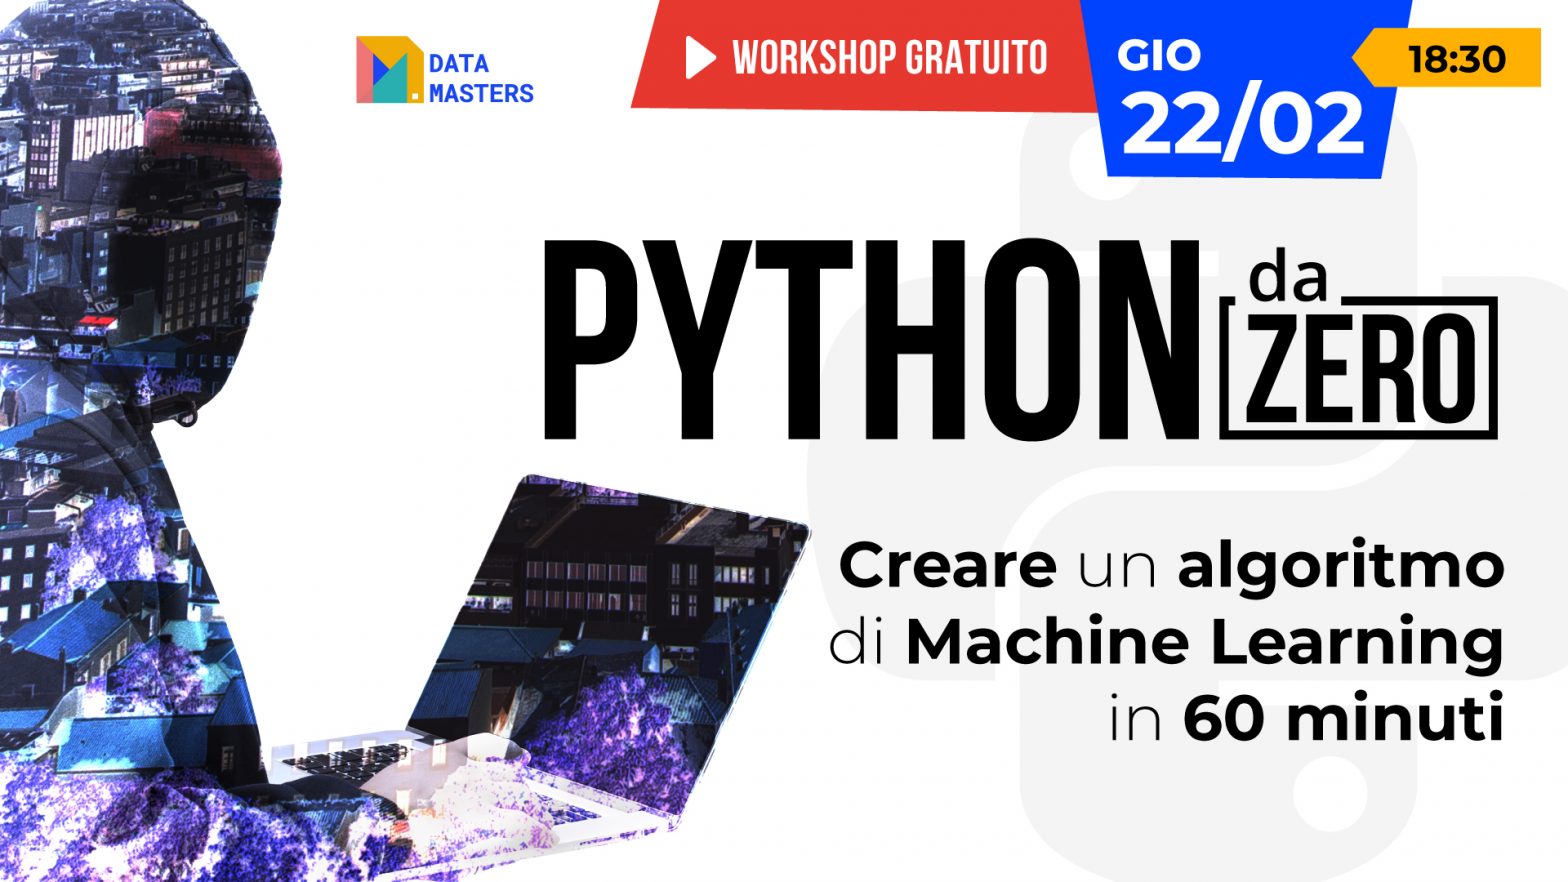 Immagine promozionale per il workshop 'Python da Zero' che mostra il titolo dell'evento, la data 'Giovedì 22/02' e l'ora '18:30', enfatizzando l'obiettivo di insegnare a creare un algoritmo di Machine Learning in 60 minuti